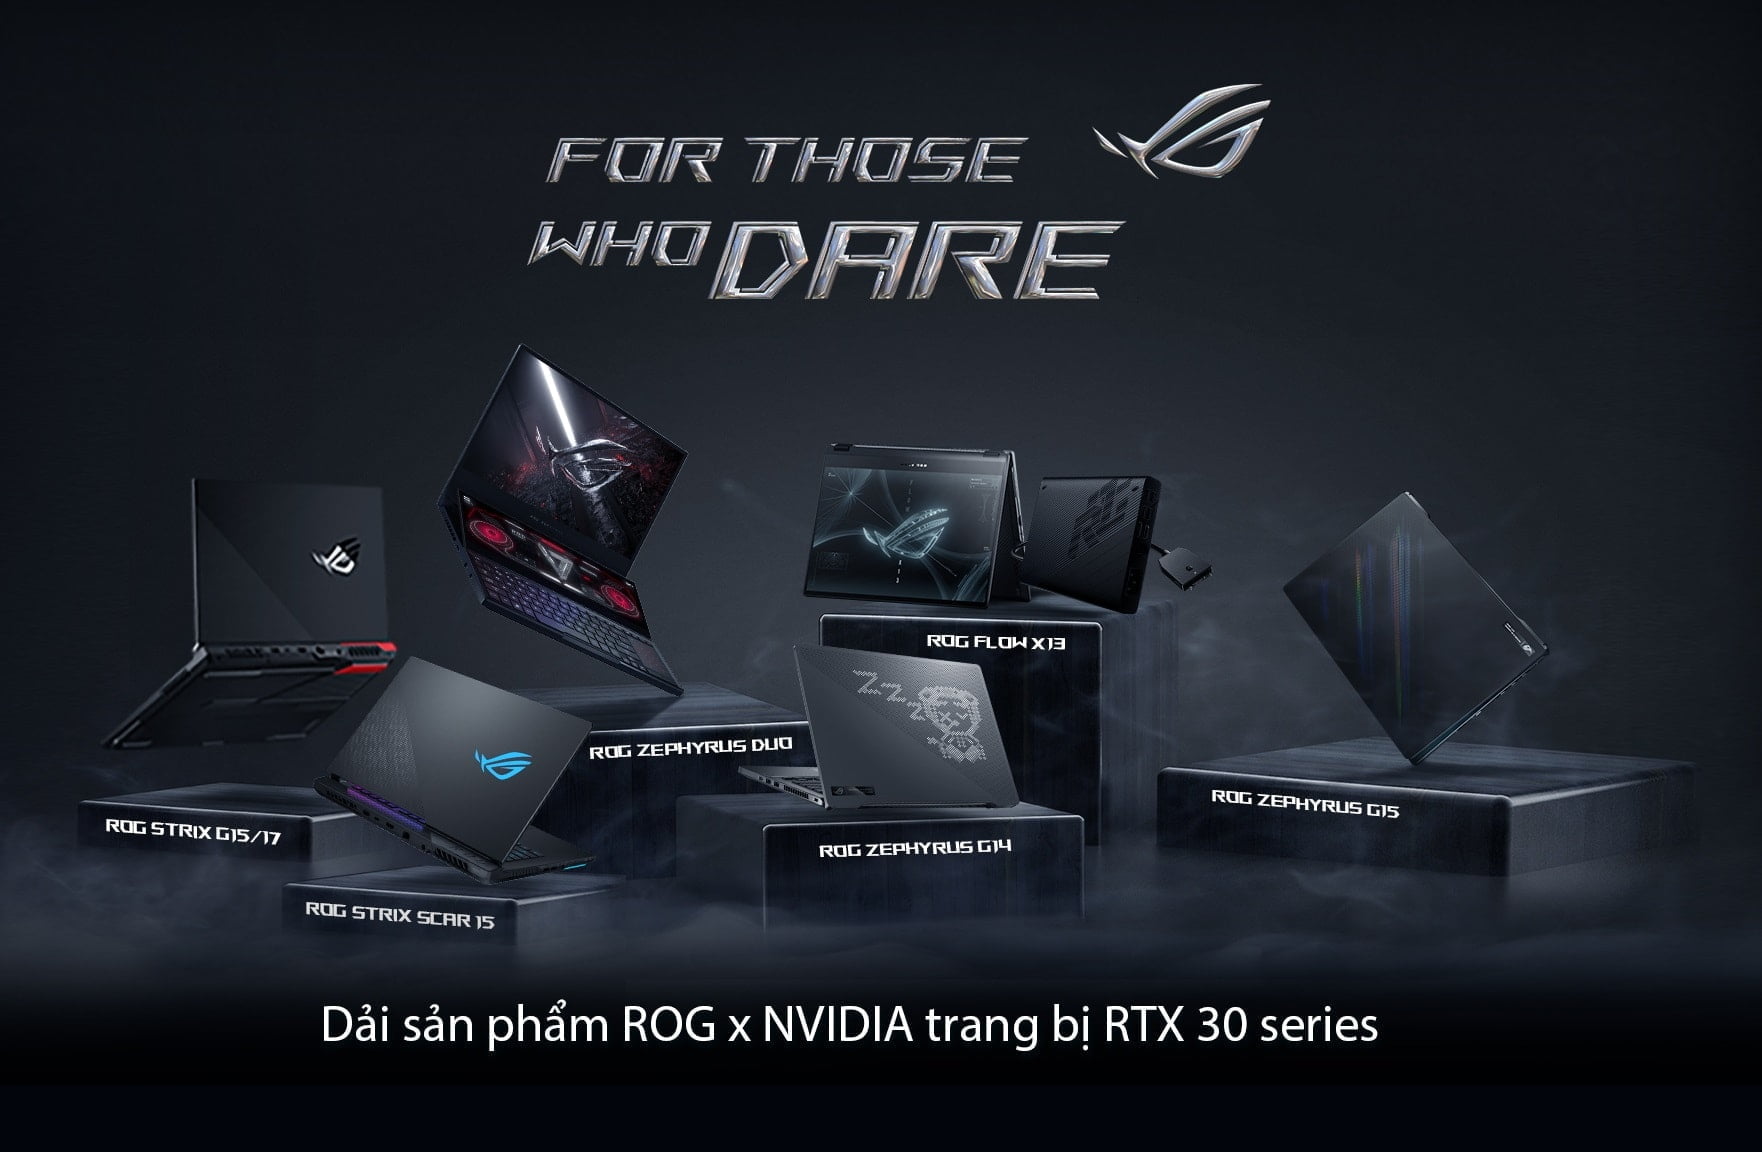 ROG công bố Flow X13 và dải sản phẩm toàn diện sử dụng đồ họa NVIDIA GeForce RTX 30-series tại sự kiện FOR THOSE WHO DARE